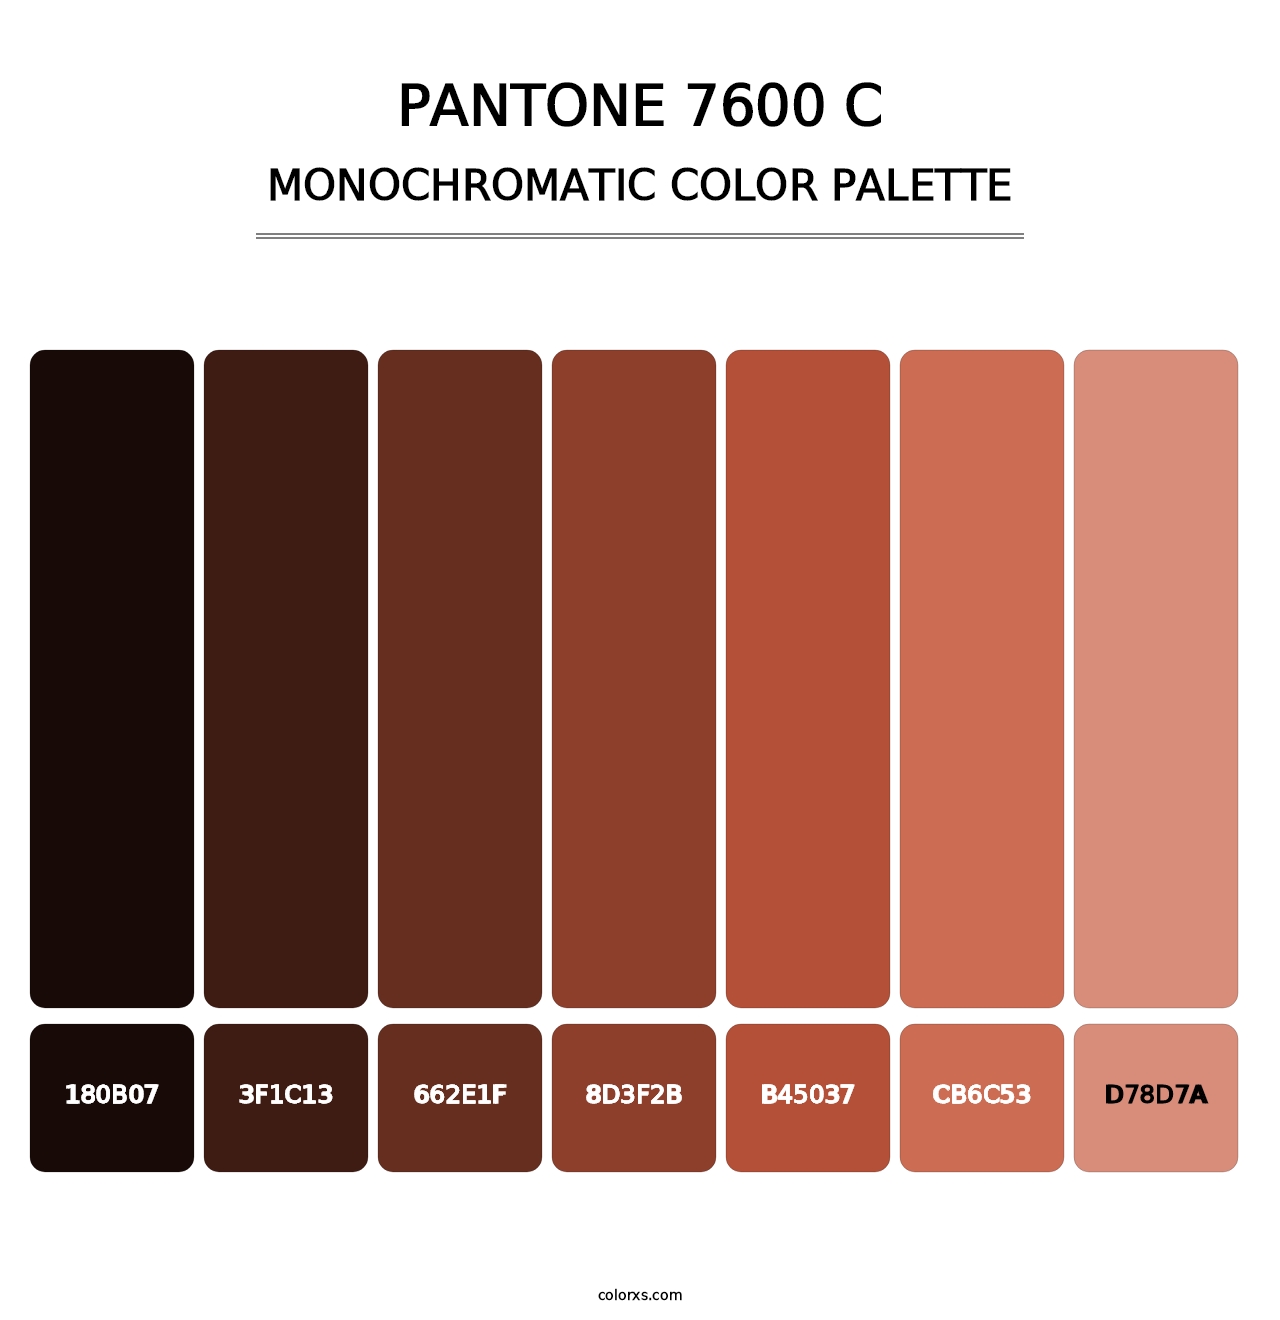 PANTONE 7600 C - Monochromatic Color Palette